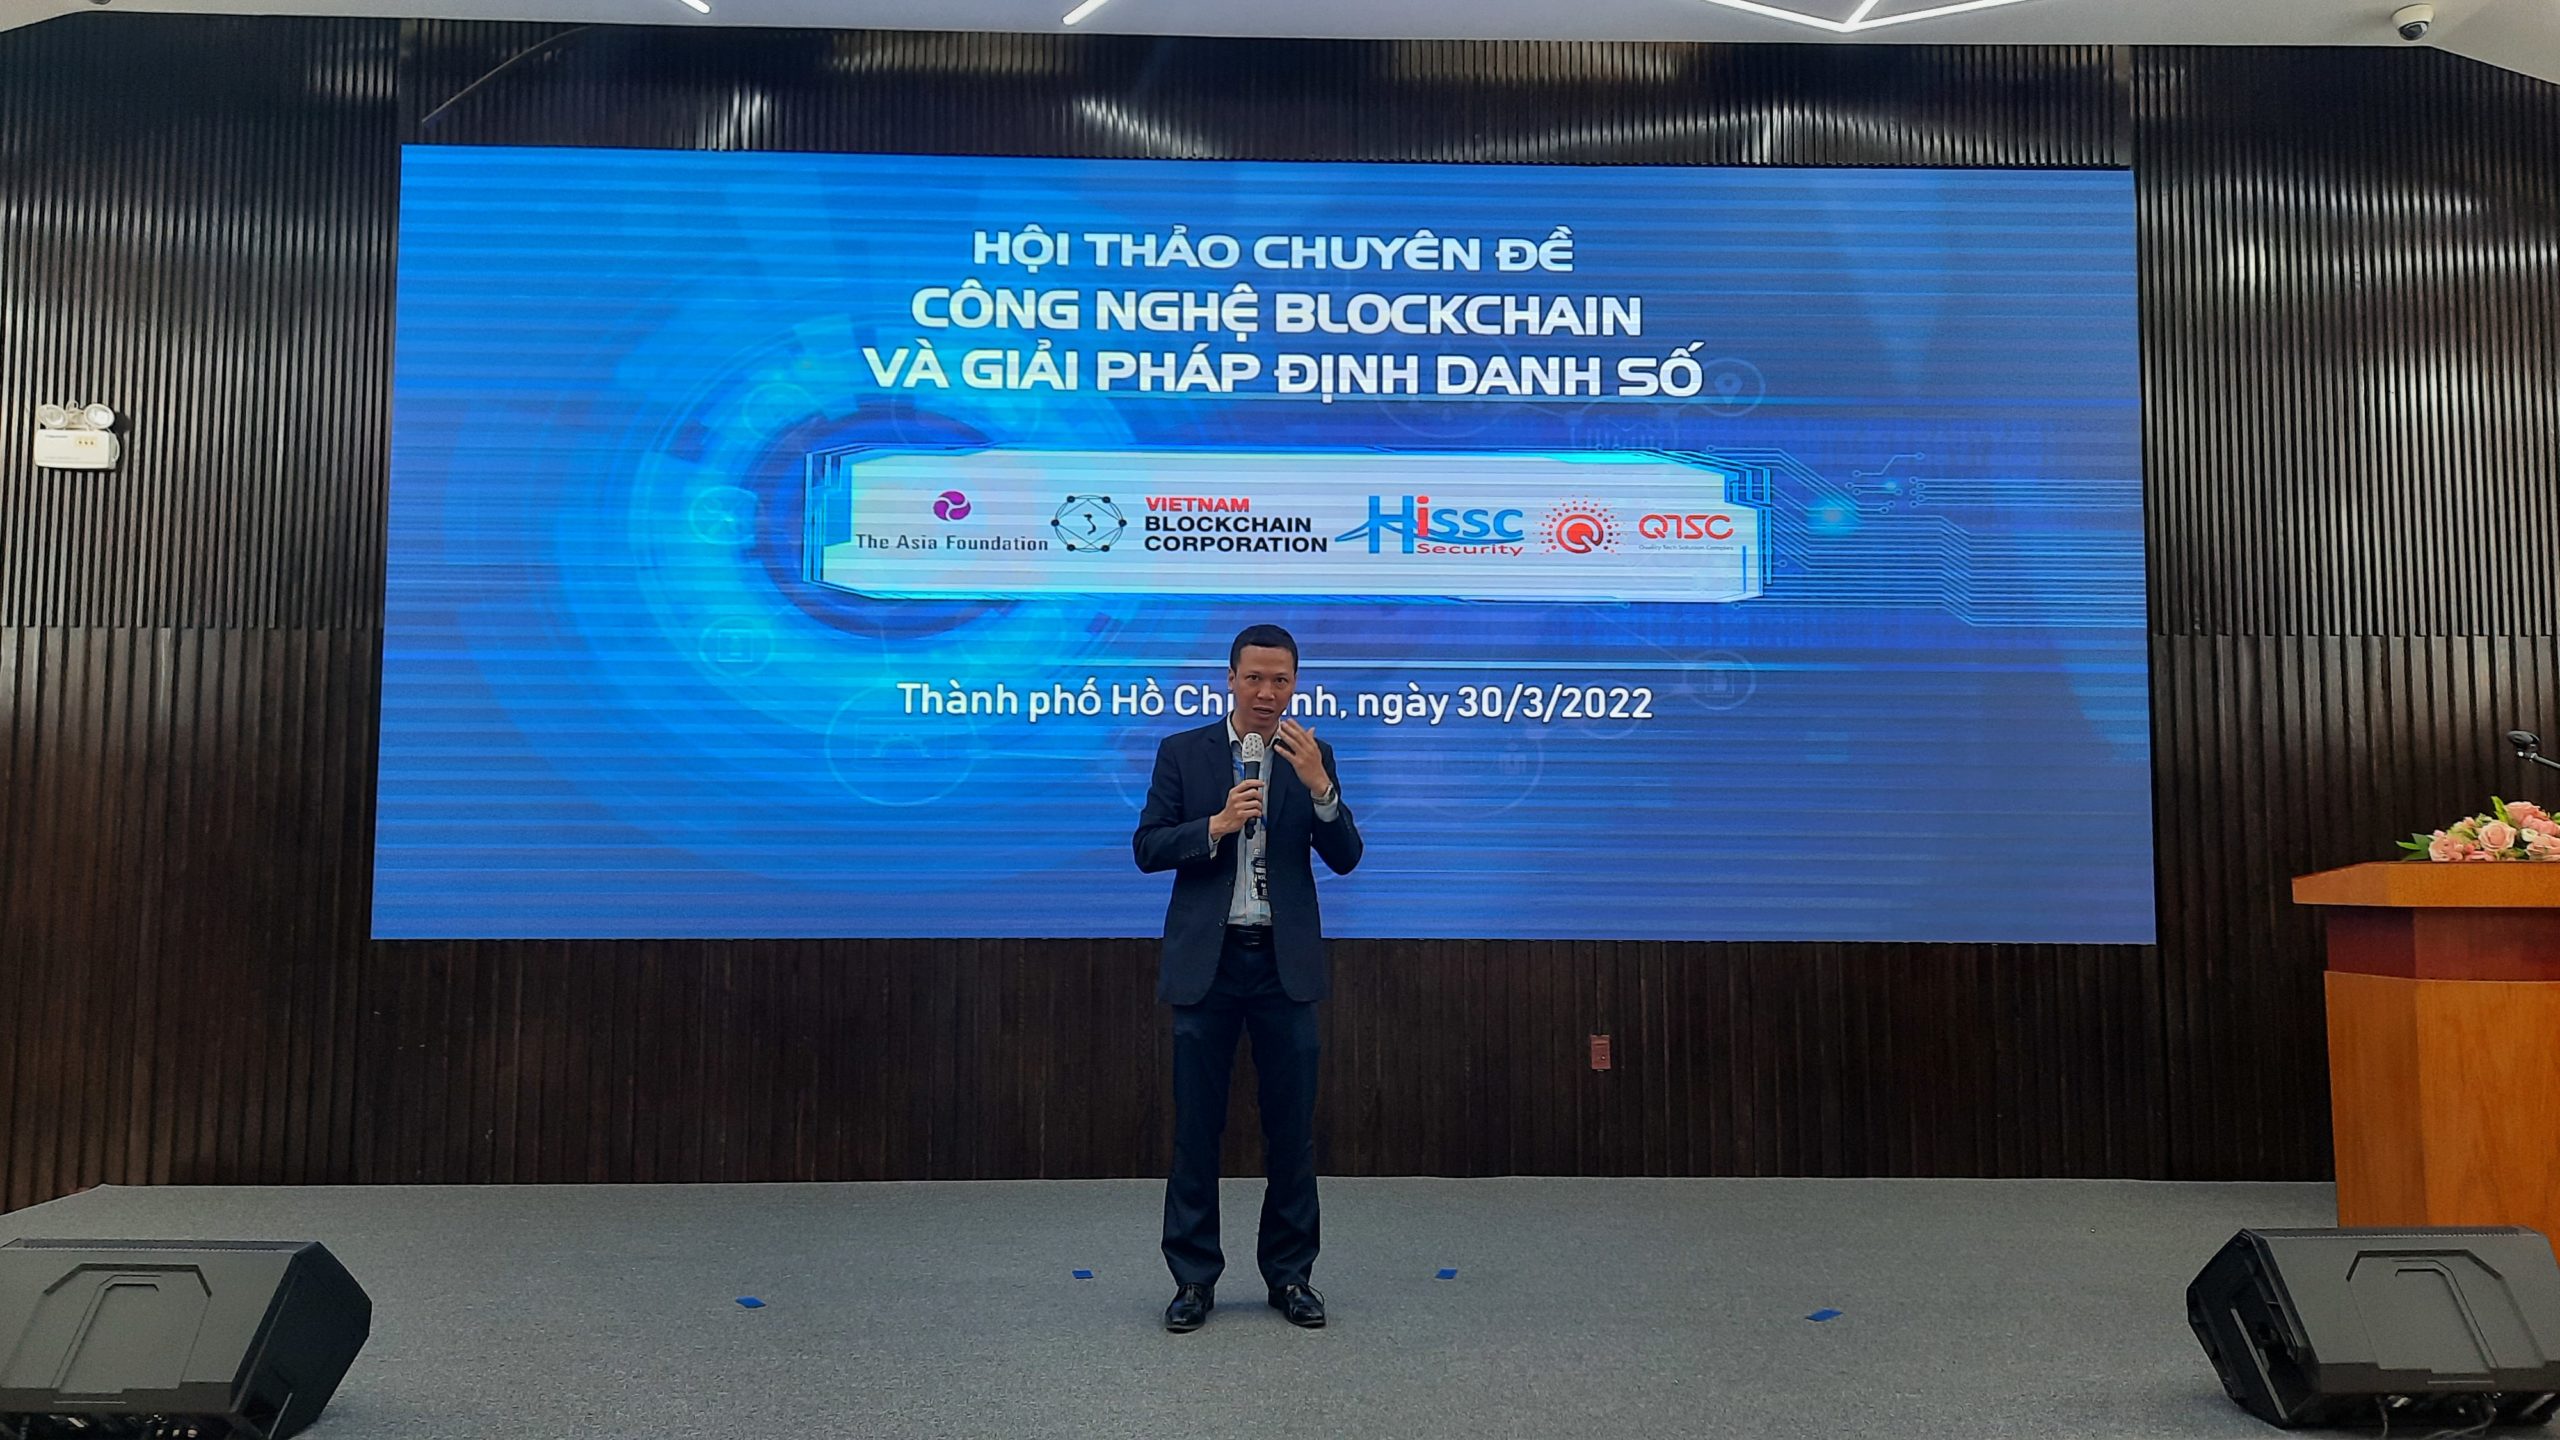 Hình 2: Ông Đỗ Văn Long, Chủ tịch Hội đồng quản trị, Tổng giám đốc công ty cổ phần Vietnam Blockchain